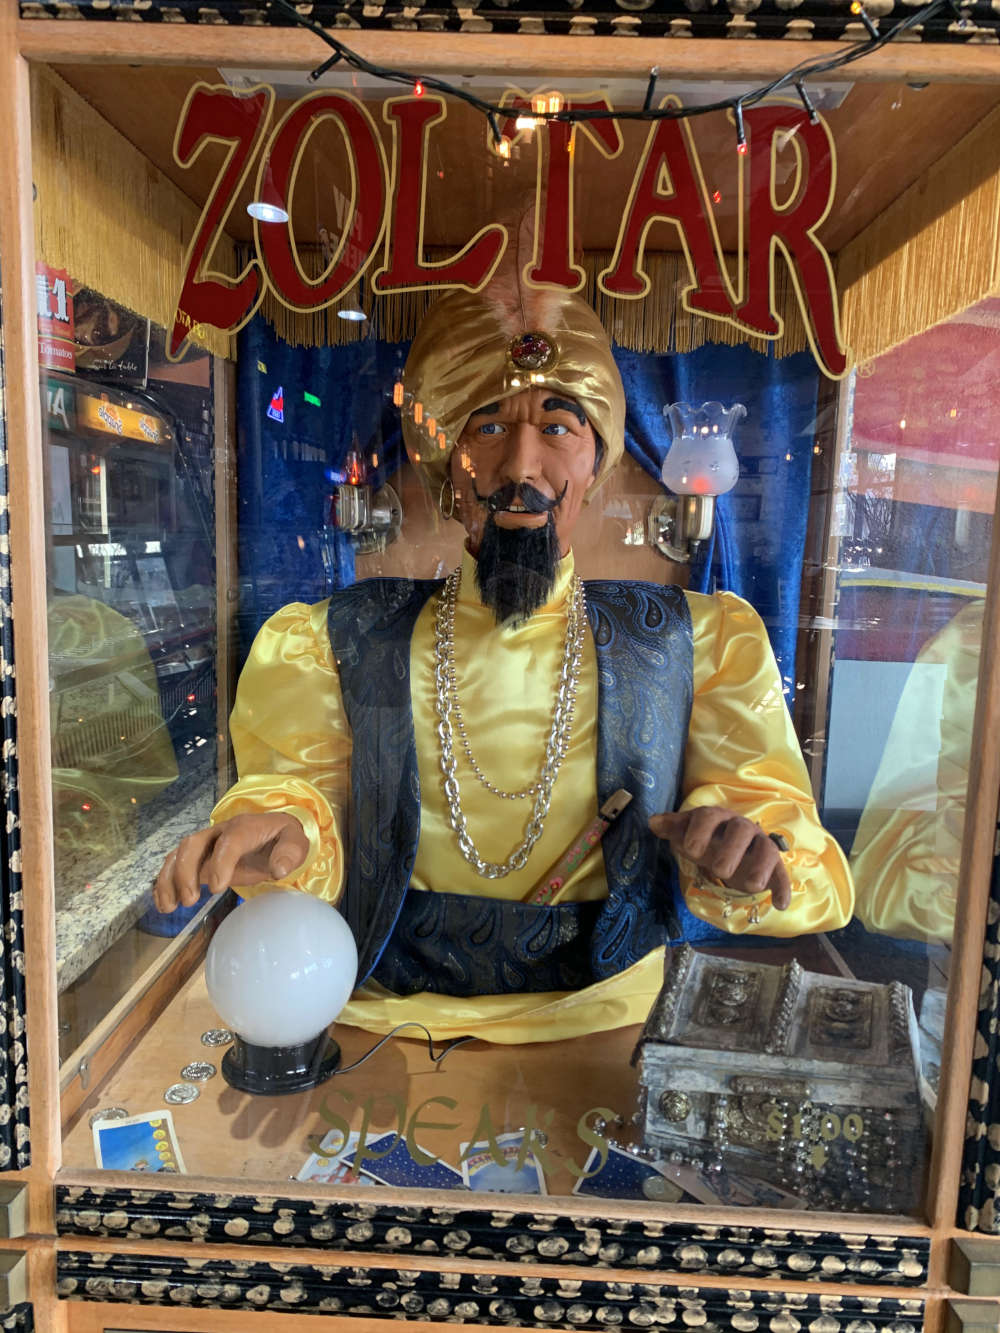 Zoltar the fortune teller